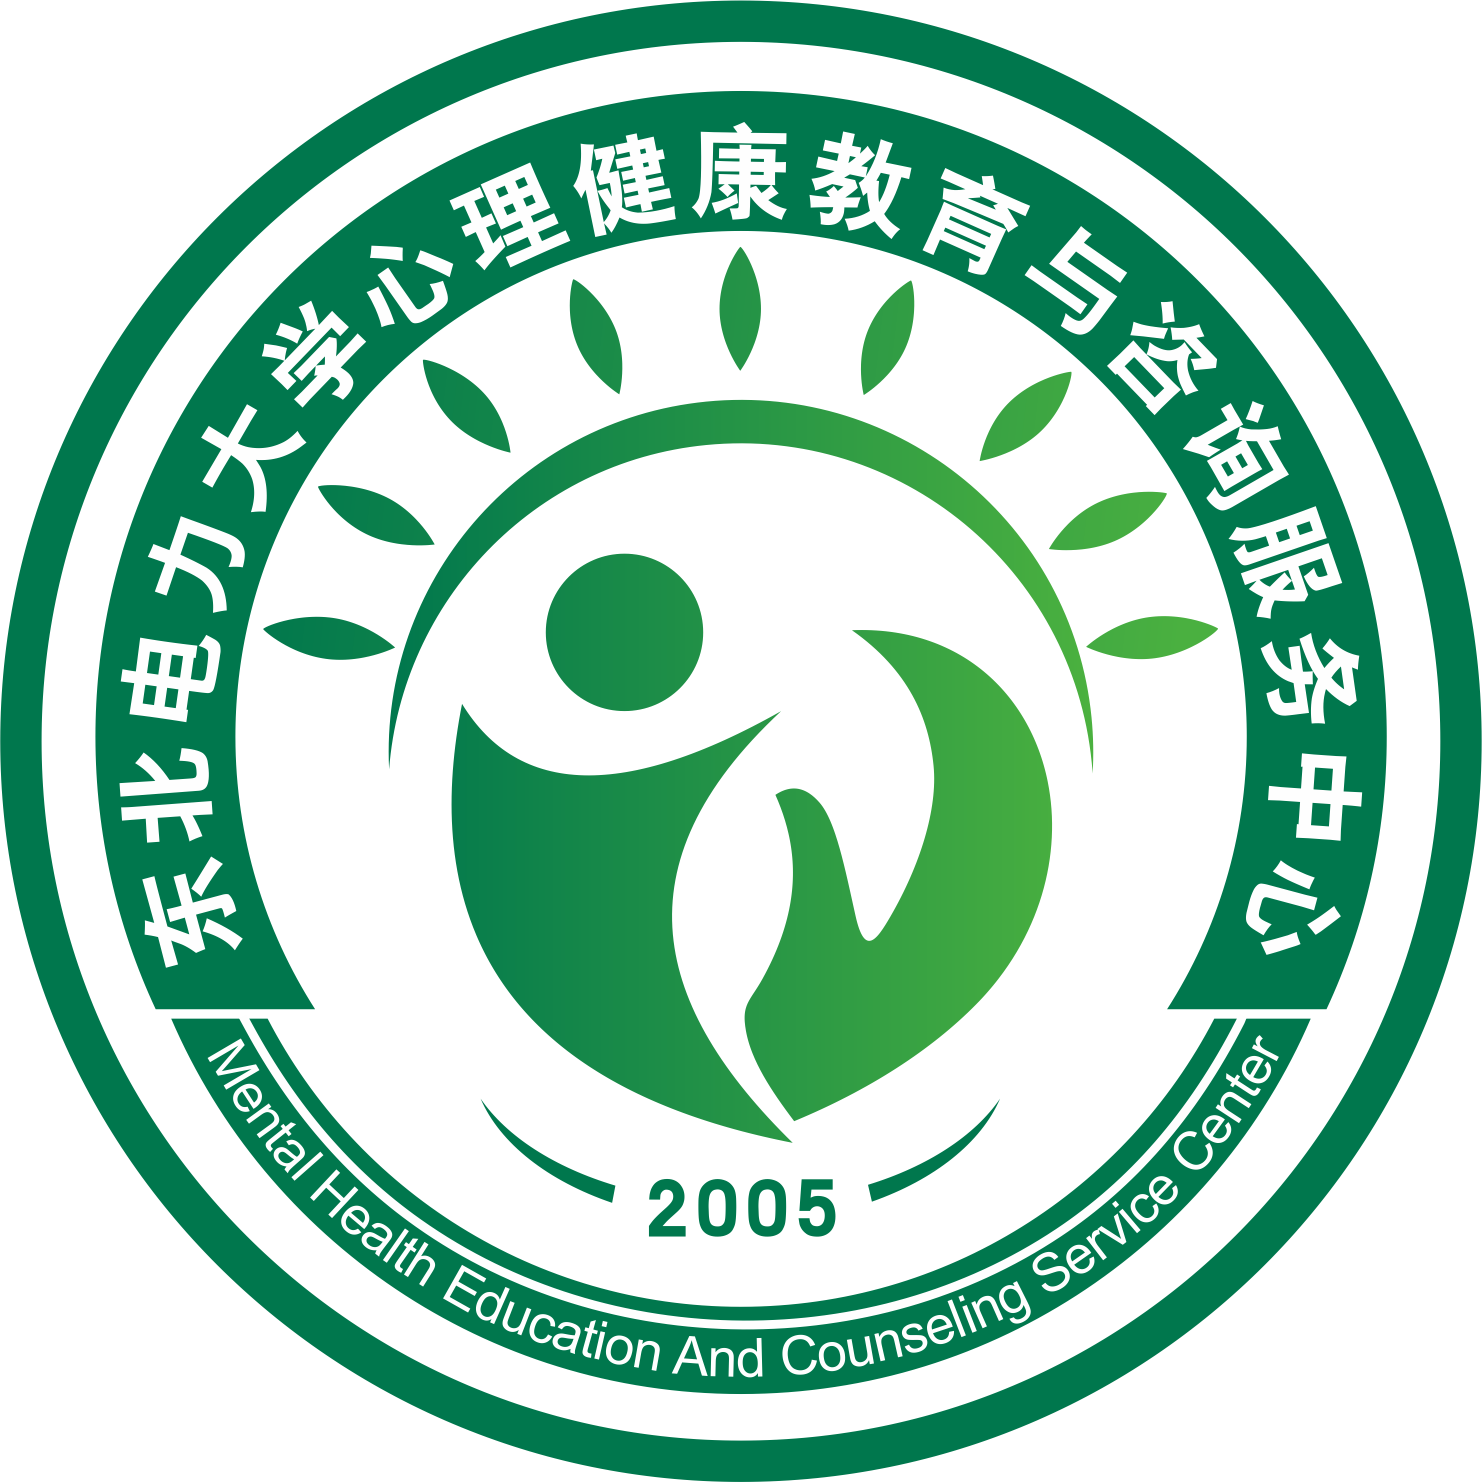 心理健康协会logo图片